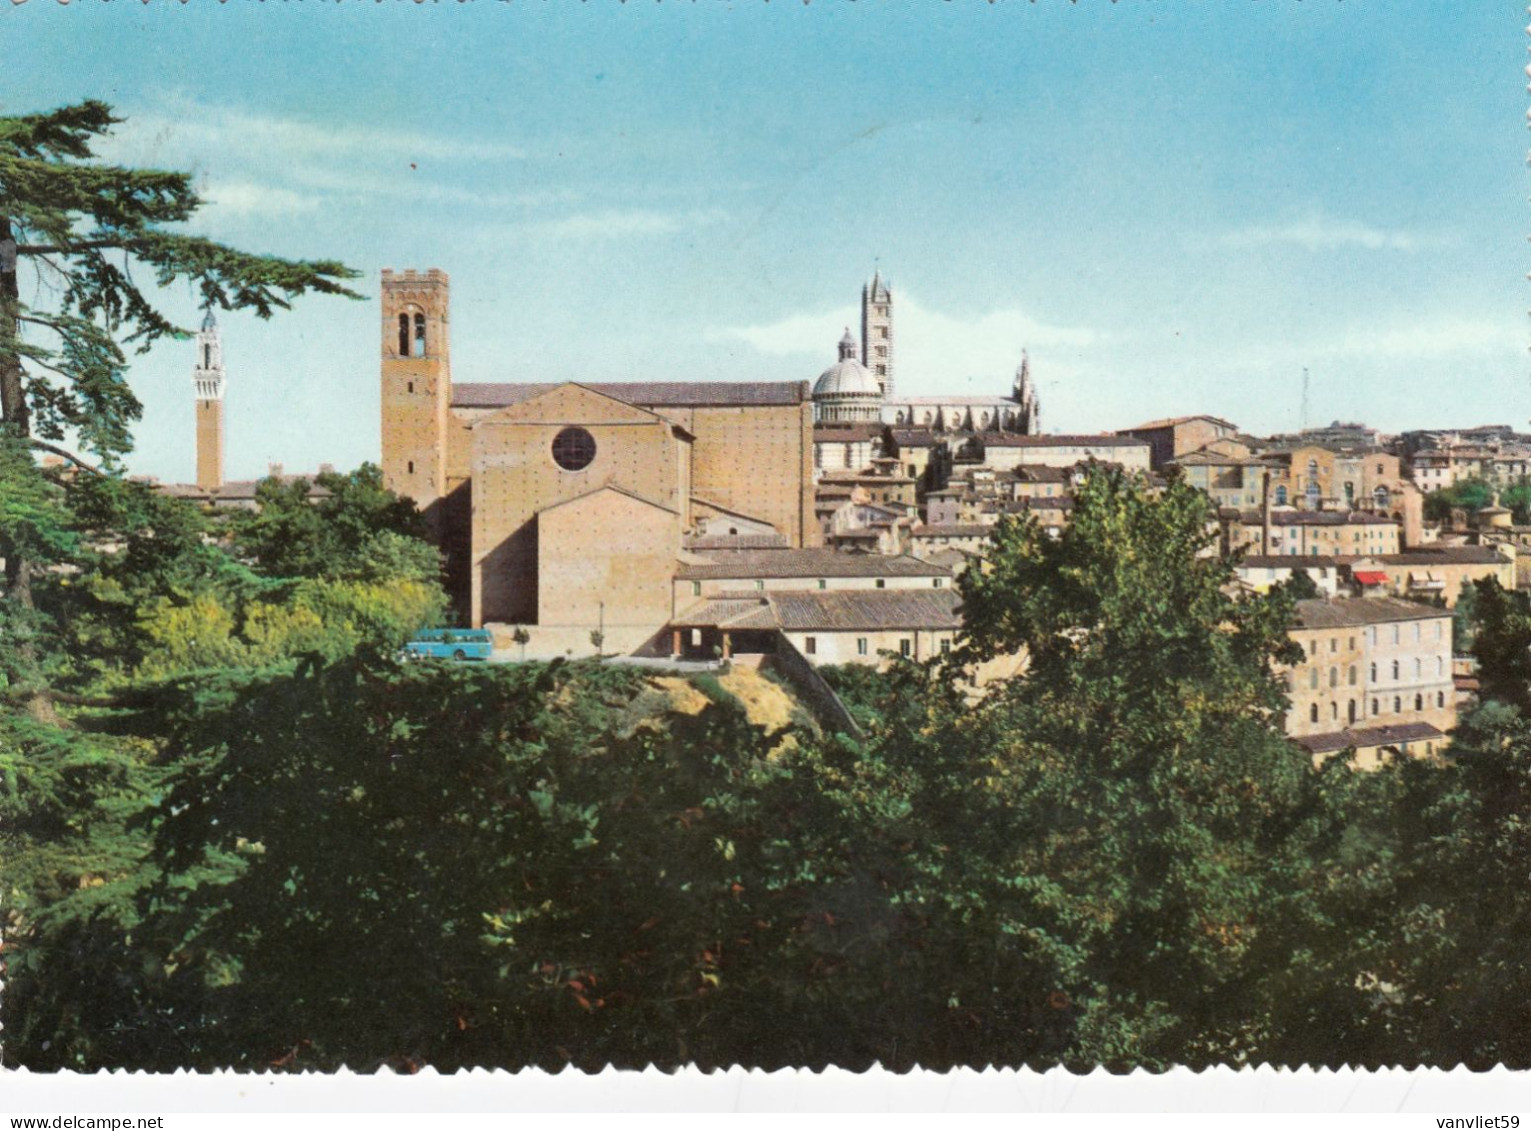 SIENA-PANORAMA DALLA FORTEZZA MEDICEA-CARTOLINA VERA FOTOGRAFIA-VIAGGIATA IL 7-4-1961 - Siena